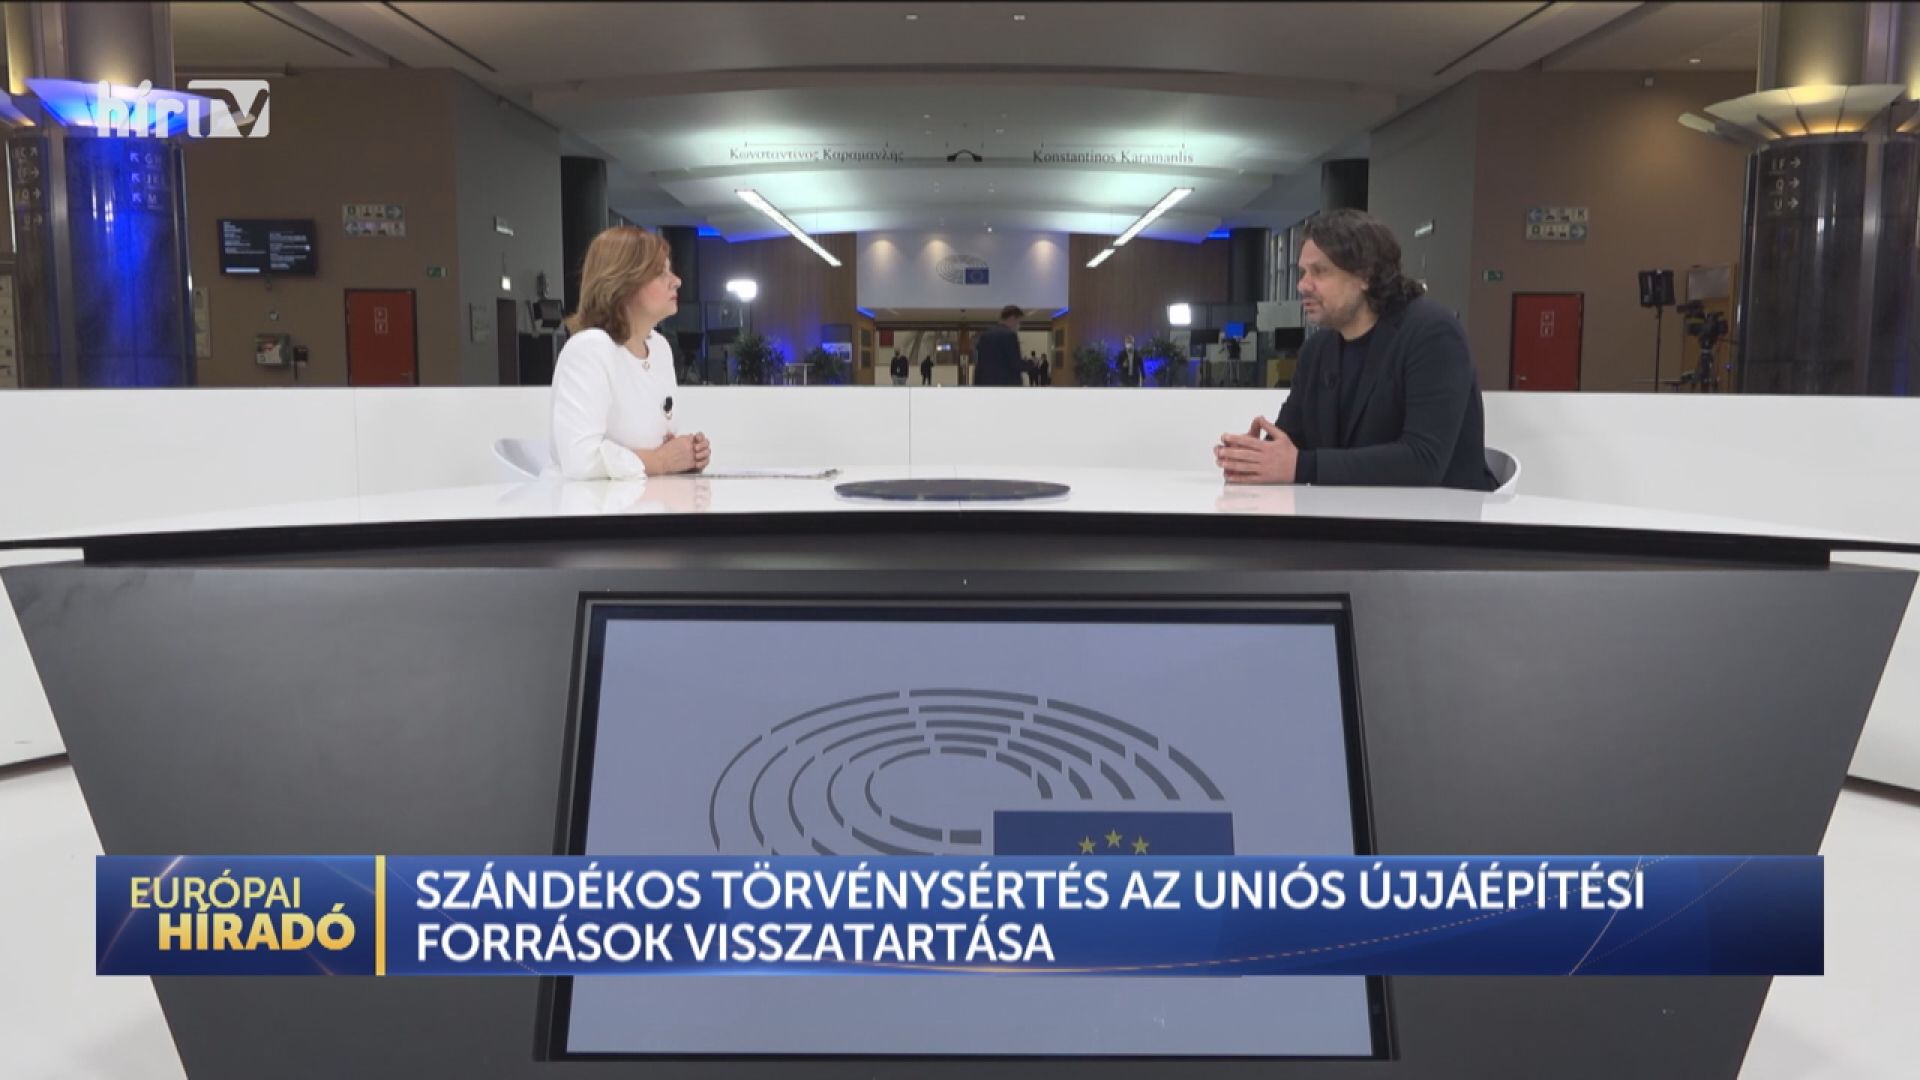 Európai híradó: Újabb uniós jelentés készül Magyarországról!